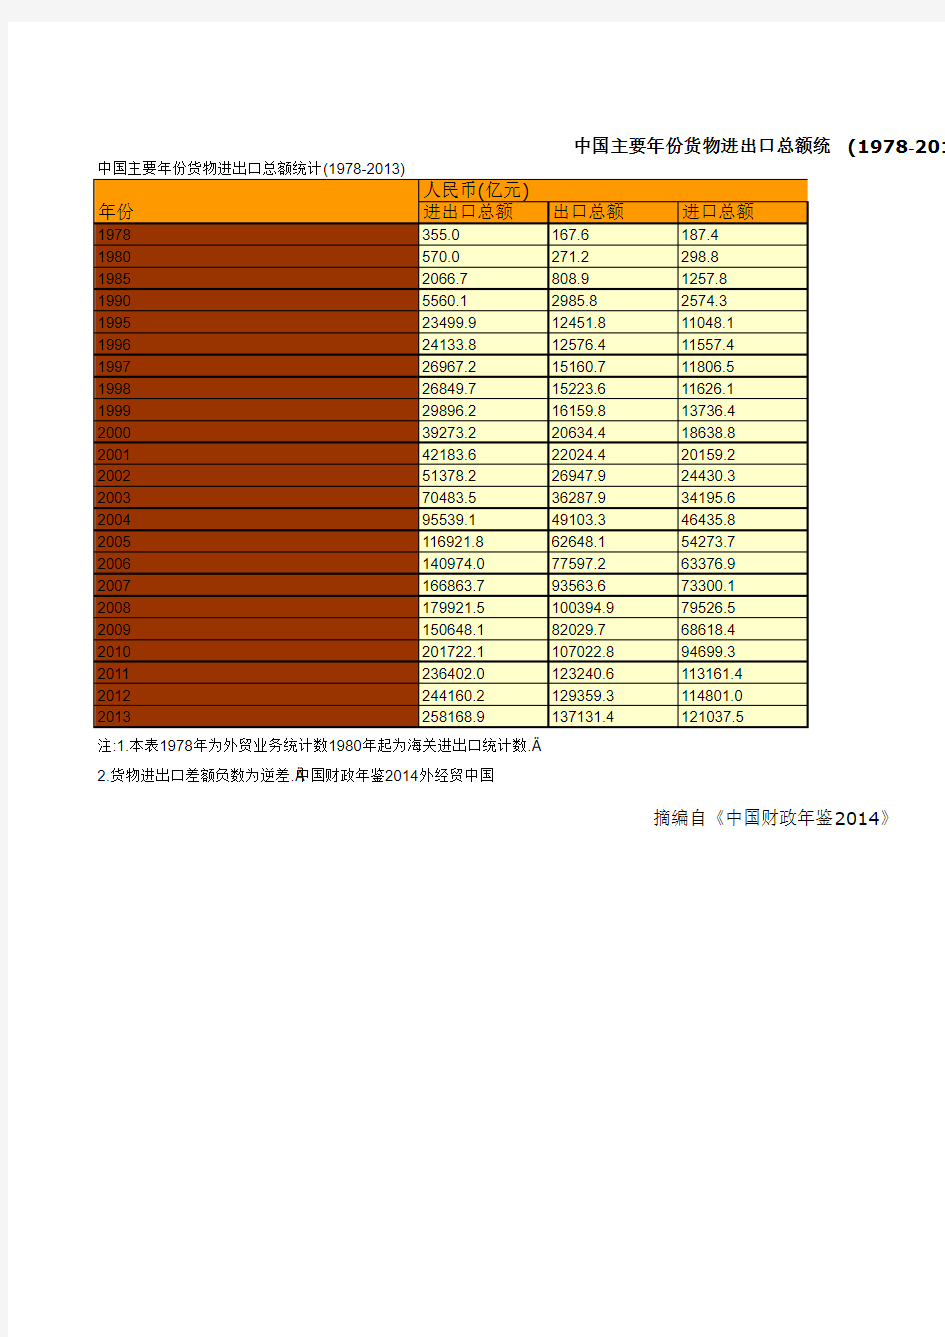 中国主要年份货物进出口总额统计(1978-2013)